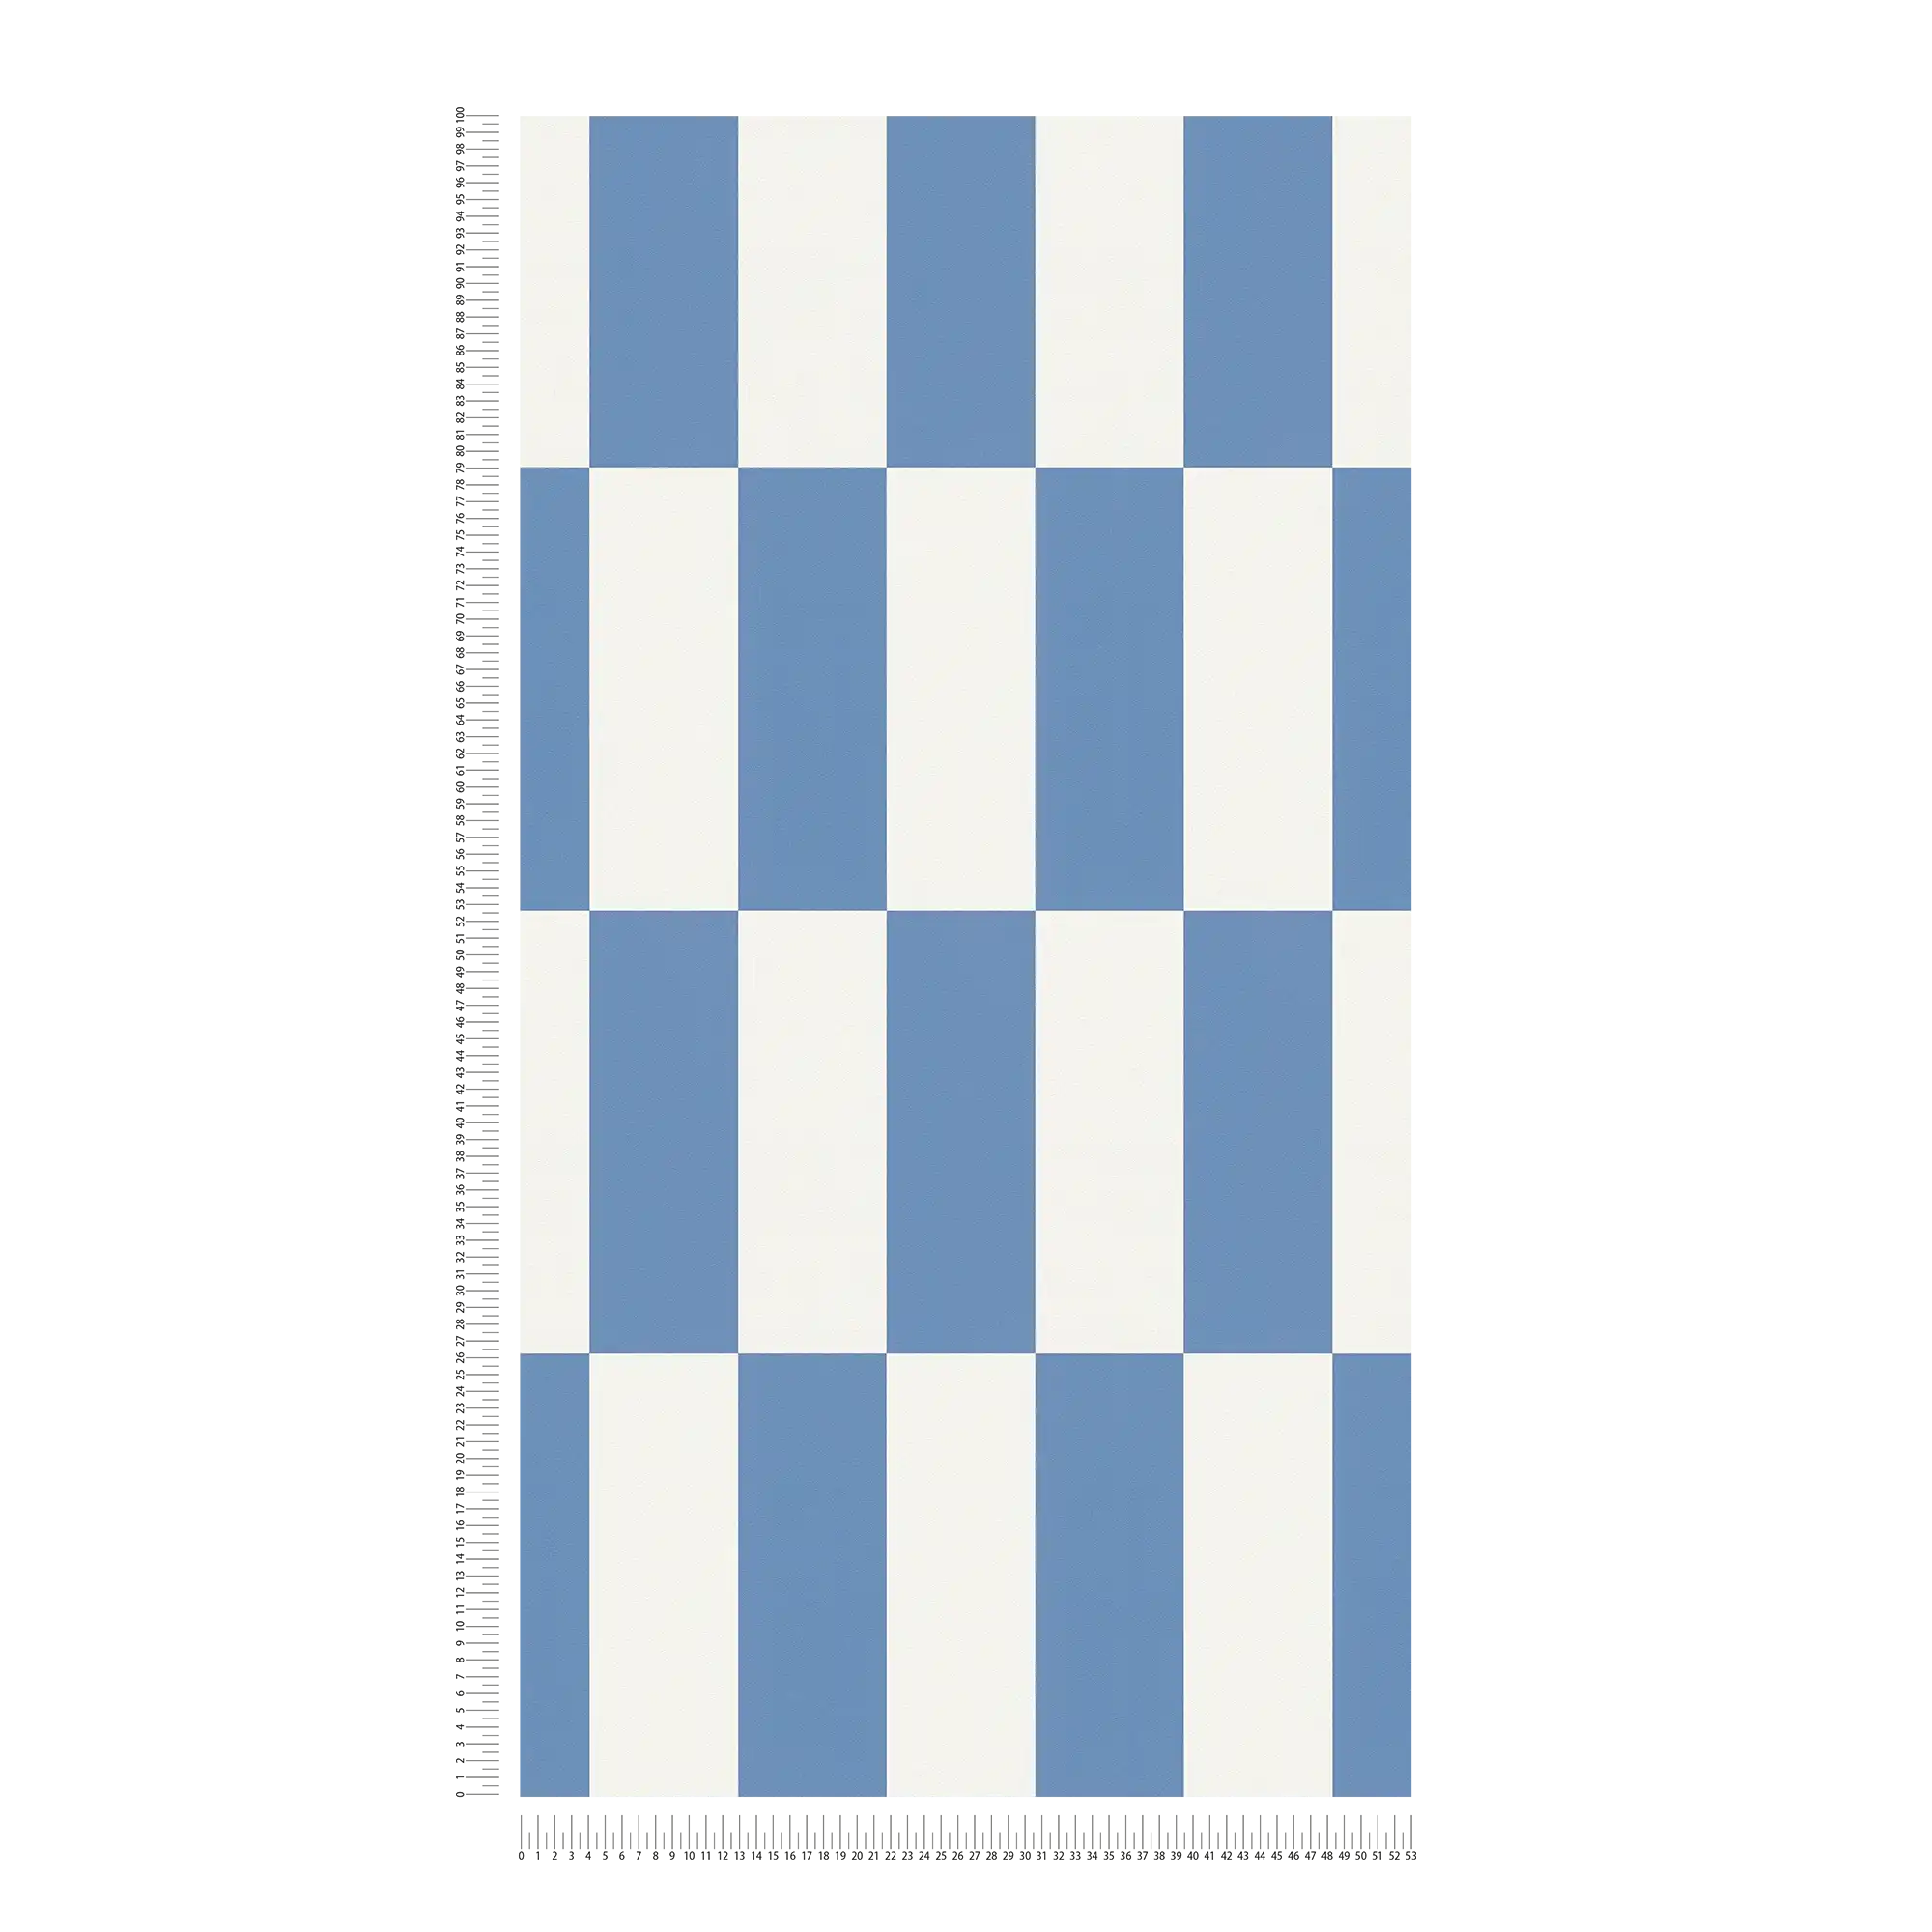             Vliesbehang met grafisch vierkant patroon - blauw, wit
        